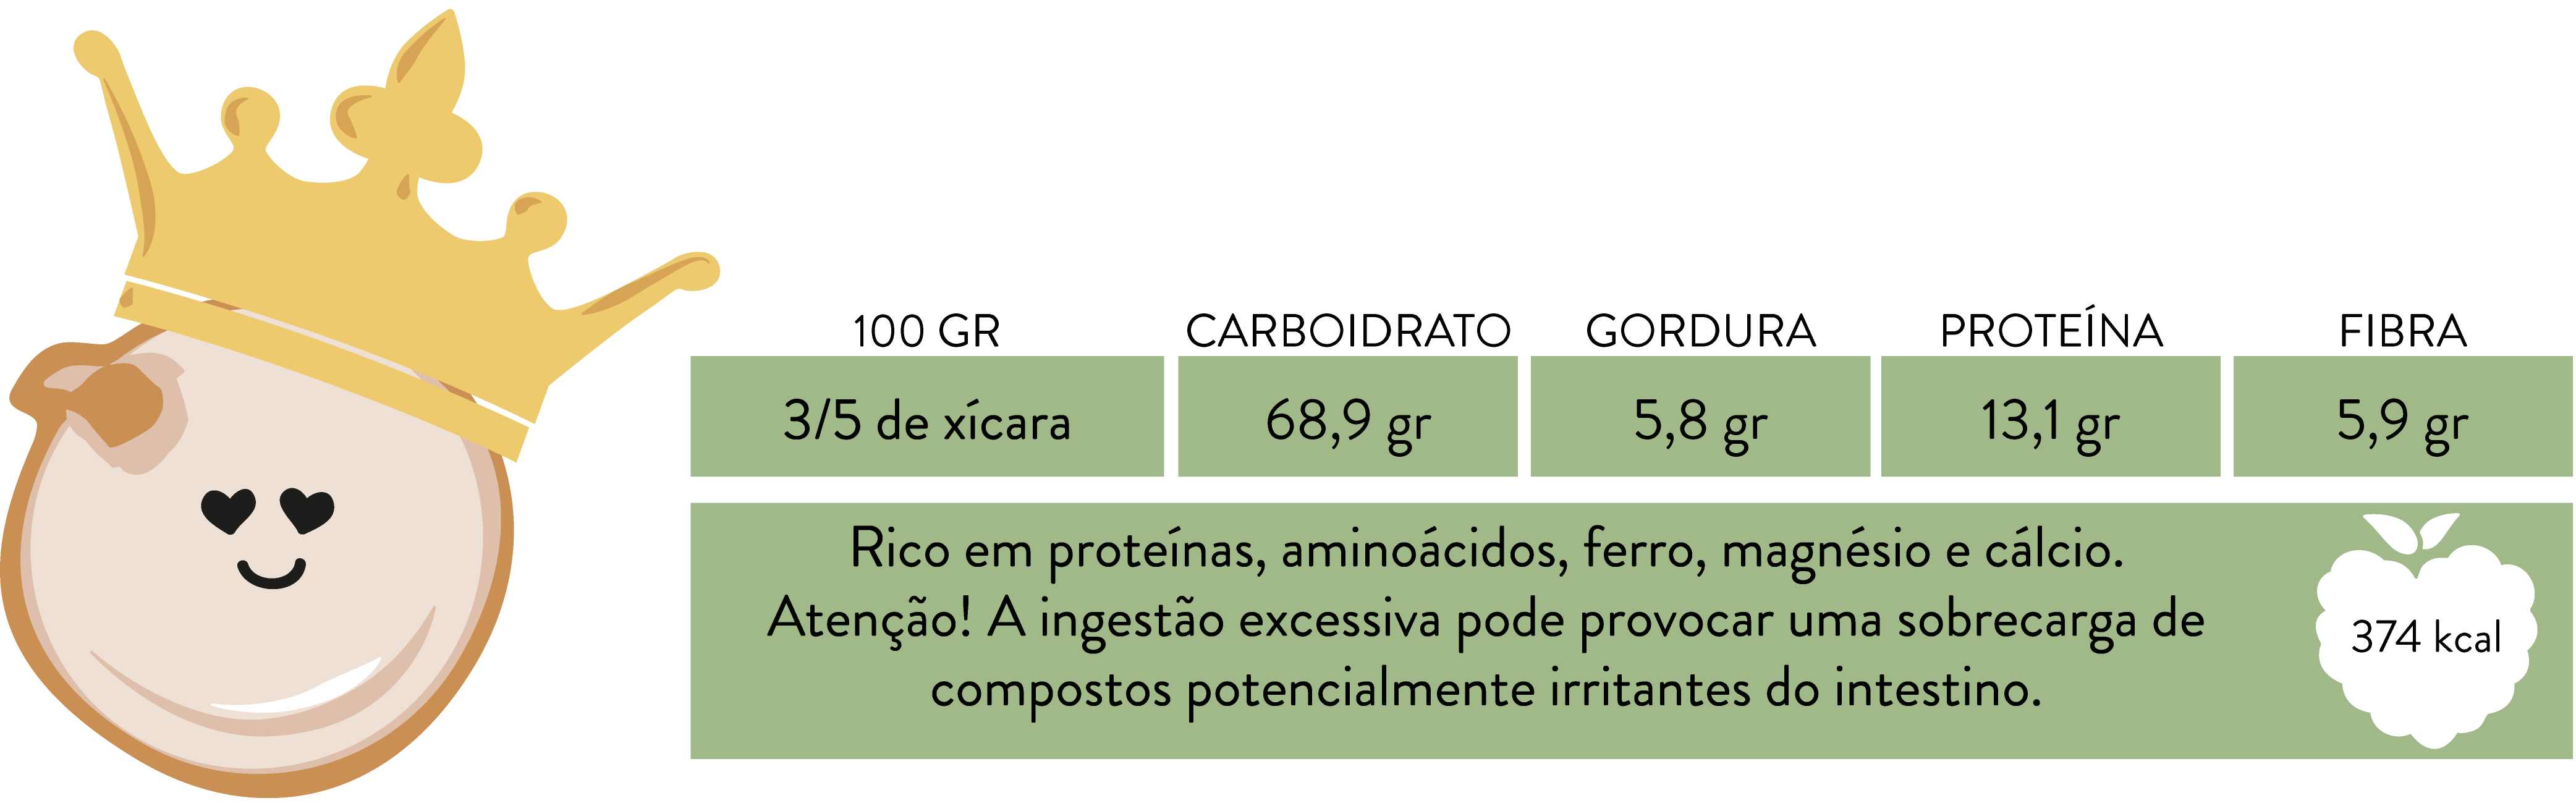 Informações Nutricionais da Quinoa